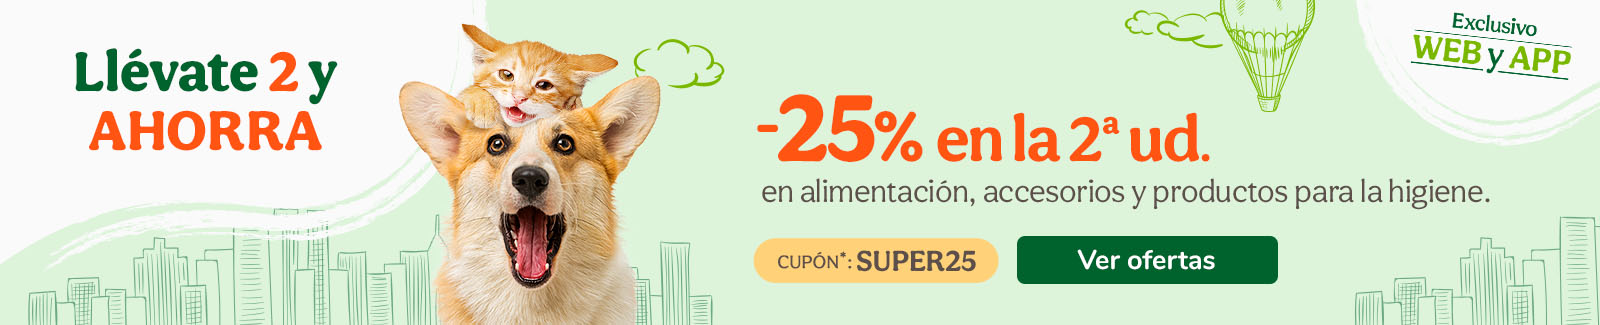 -25% en la 2ª ud. en alimentación, accesorios y productos de higiene con el cupón SUPER25